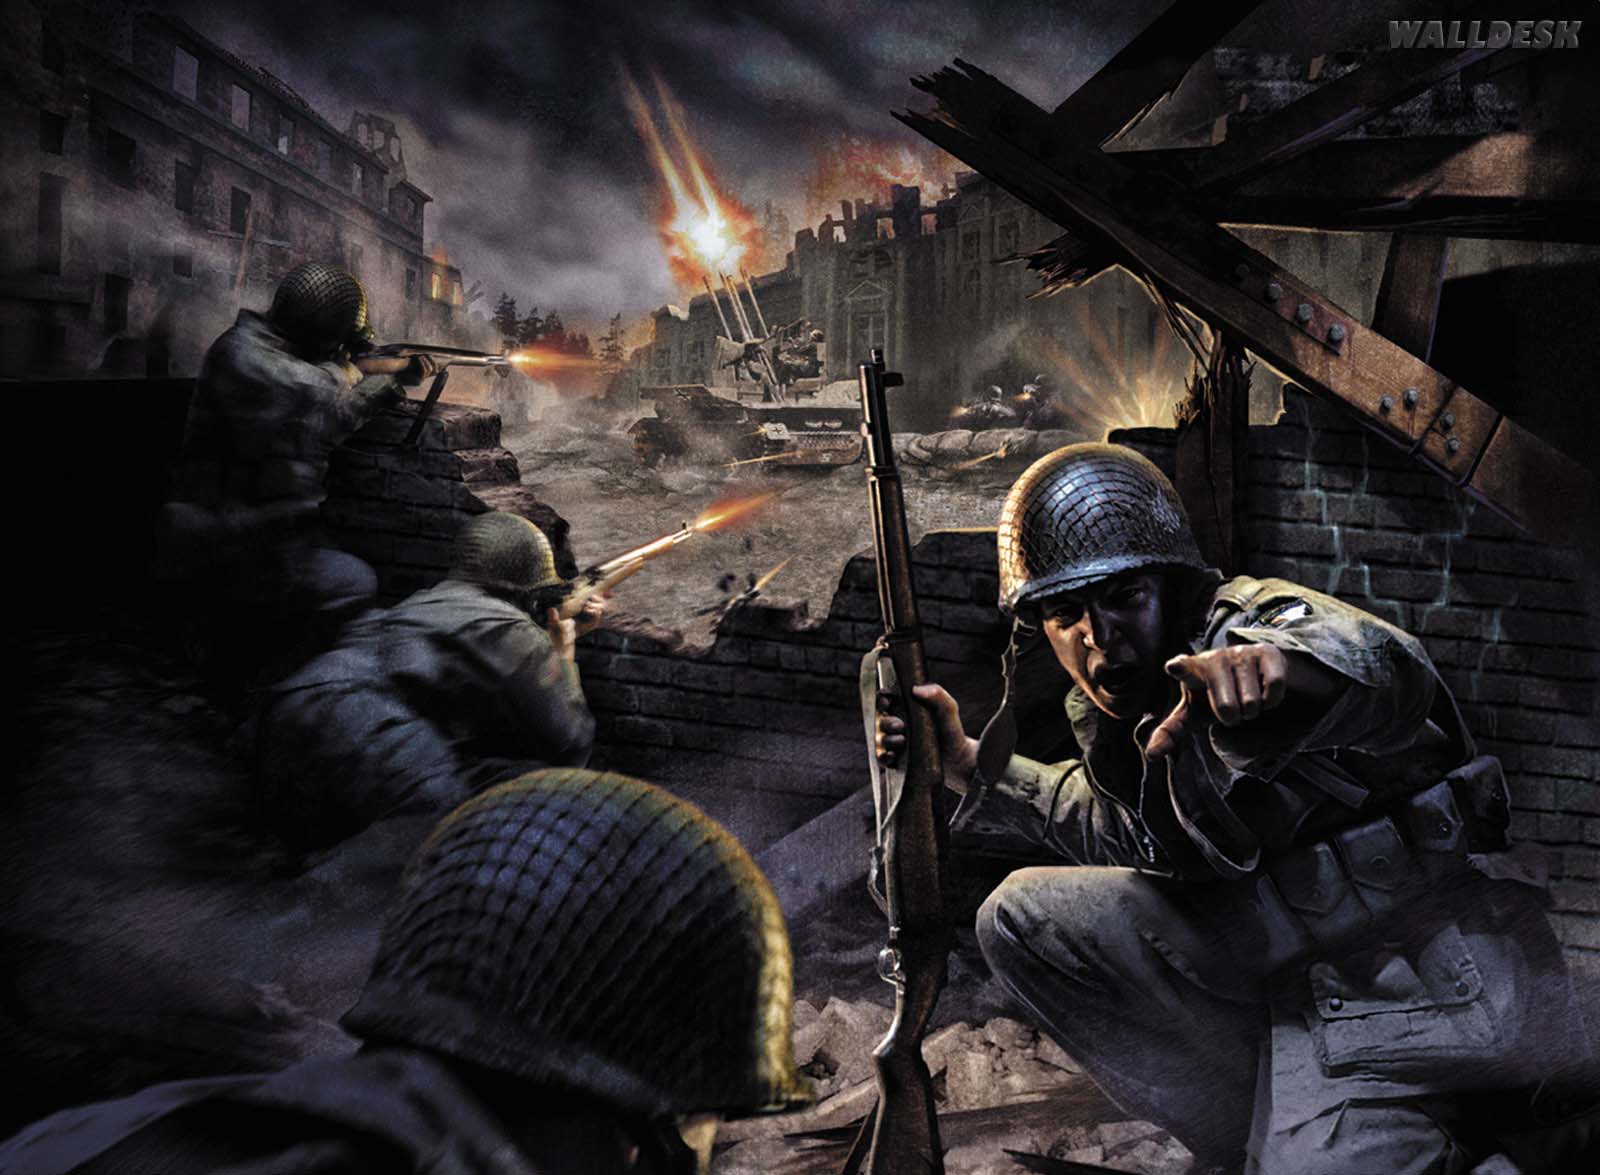  parede Call of Duty Games fotos imagens e wallpaper no WALLDESK